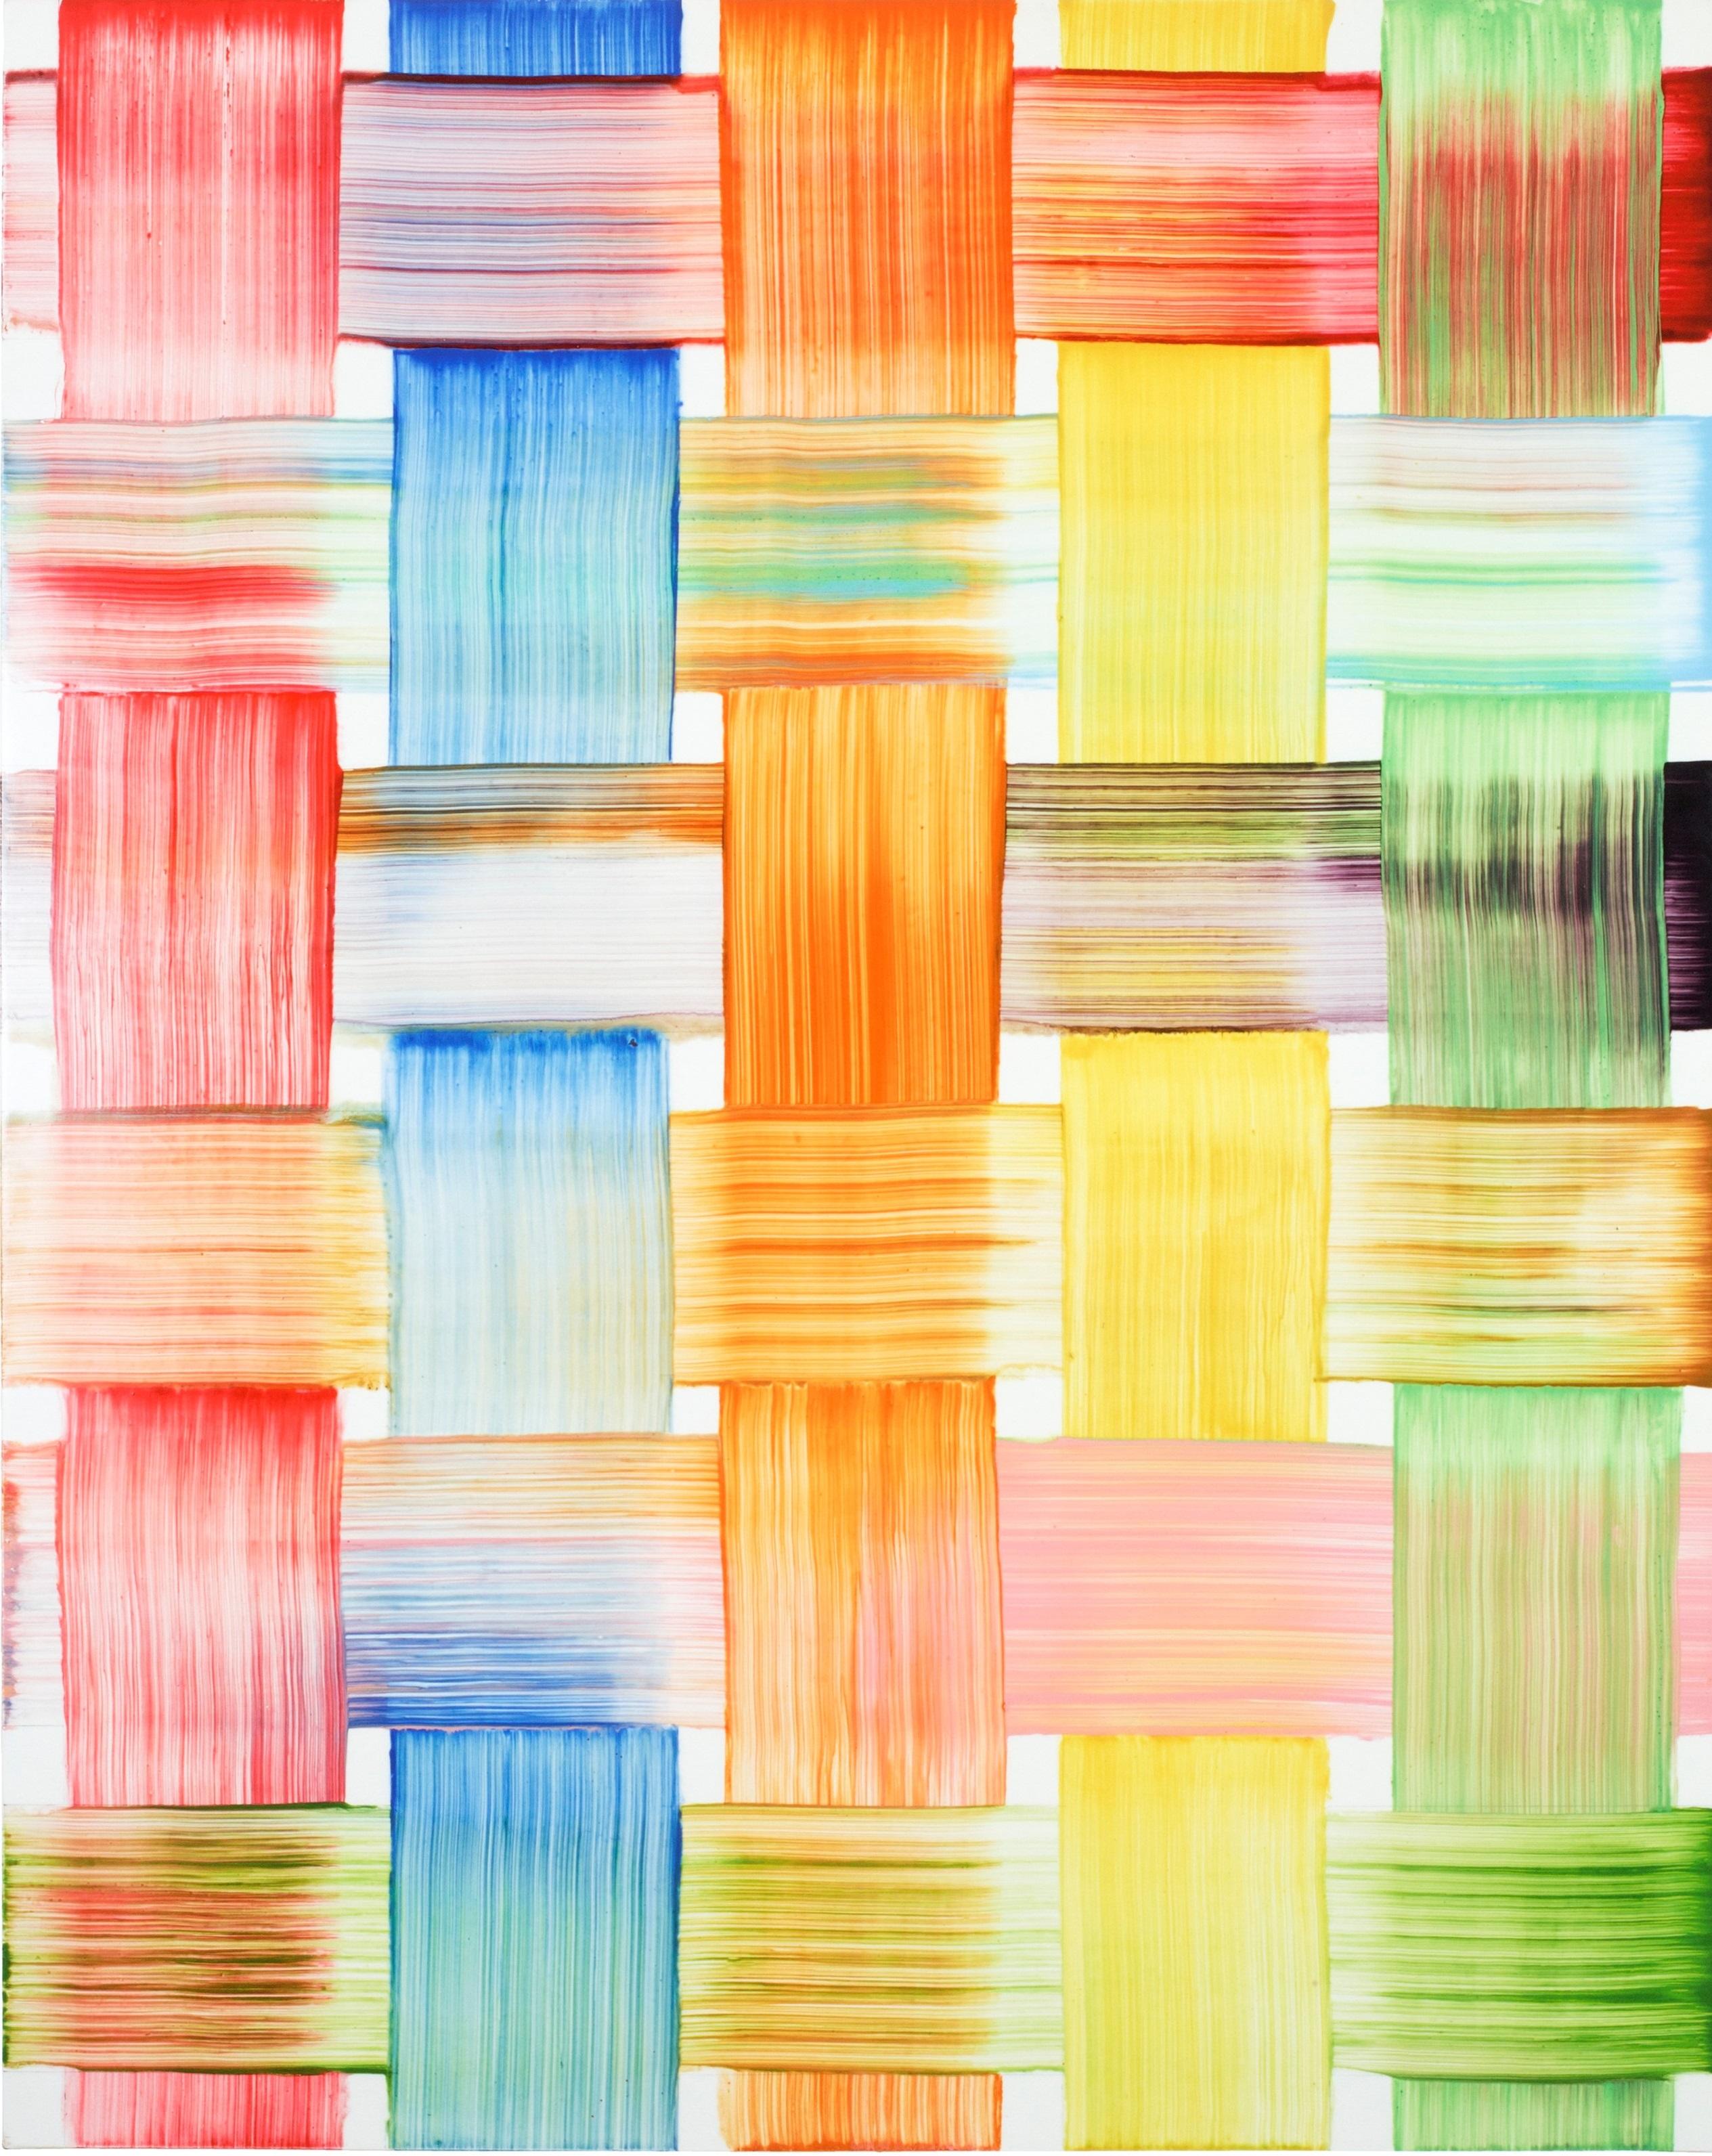 Abstract Print Bernard Frize - Caisse, 2013, impression numérique sur papier d'art 100 % coton Édition limitée de 300 exemplaires